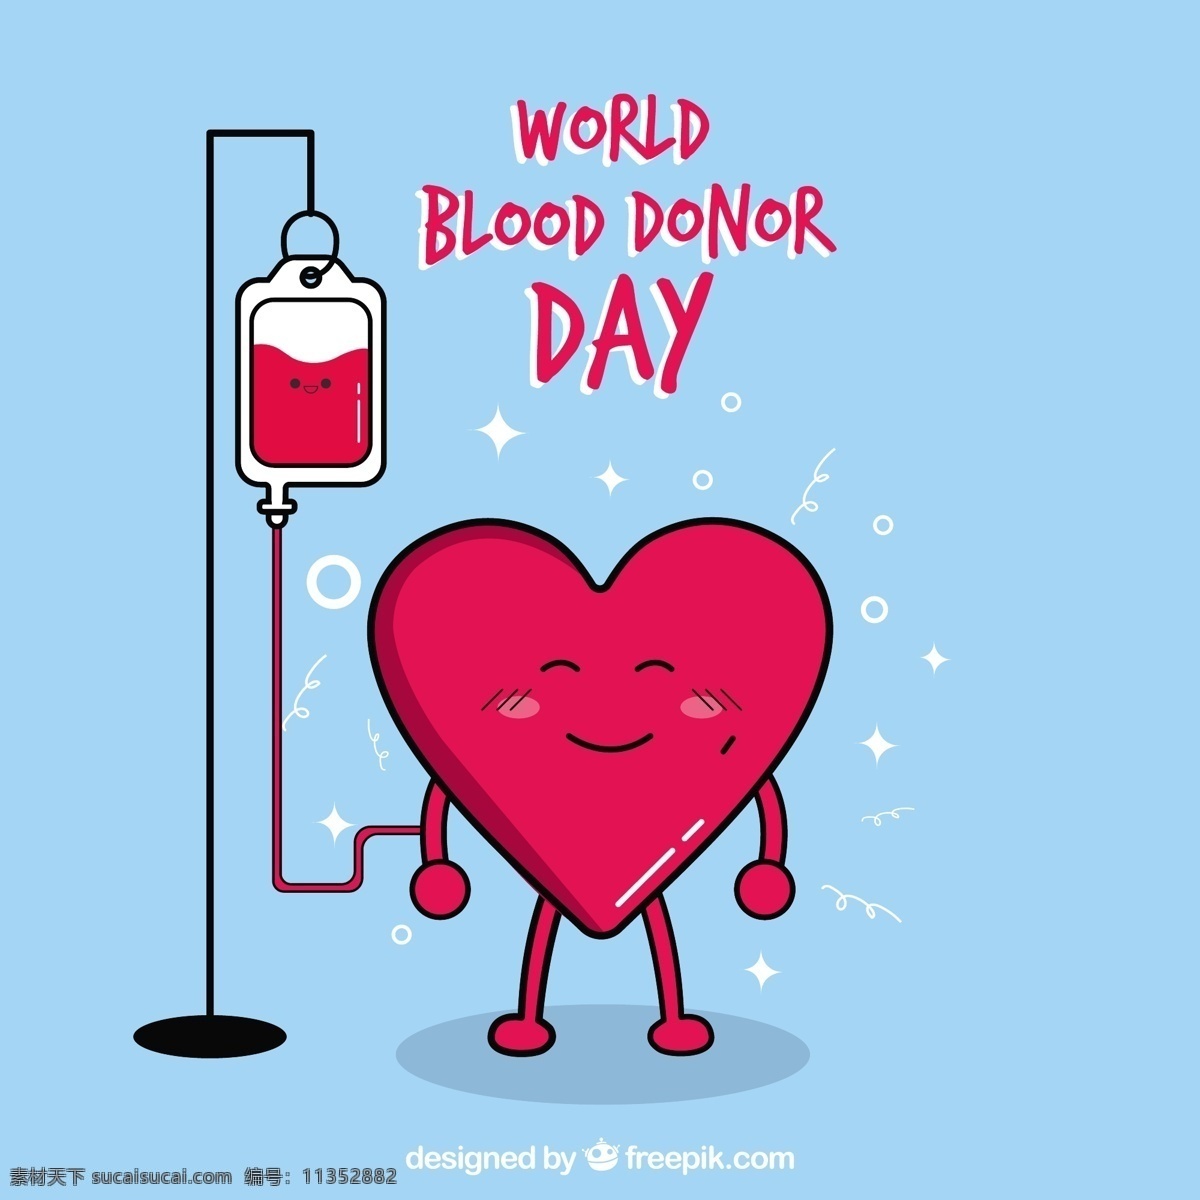 好心献血 背景 人民 心脏 医疗 世界 健康 可爱 医院 医学 血液 慈善 下降 帮助 实验室 生活 护理 紧急情况 捐赠